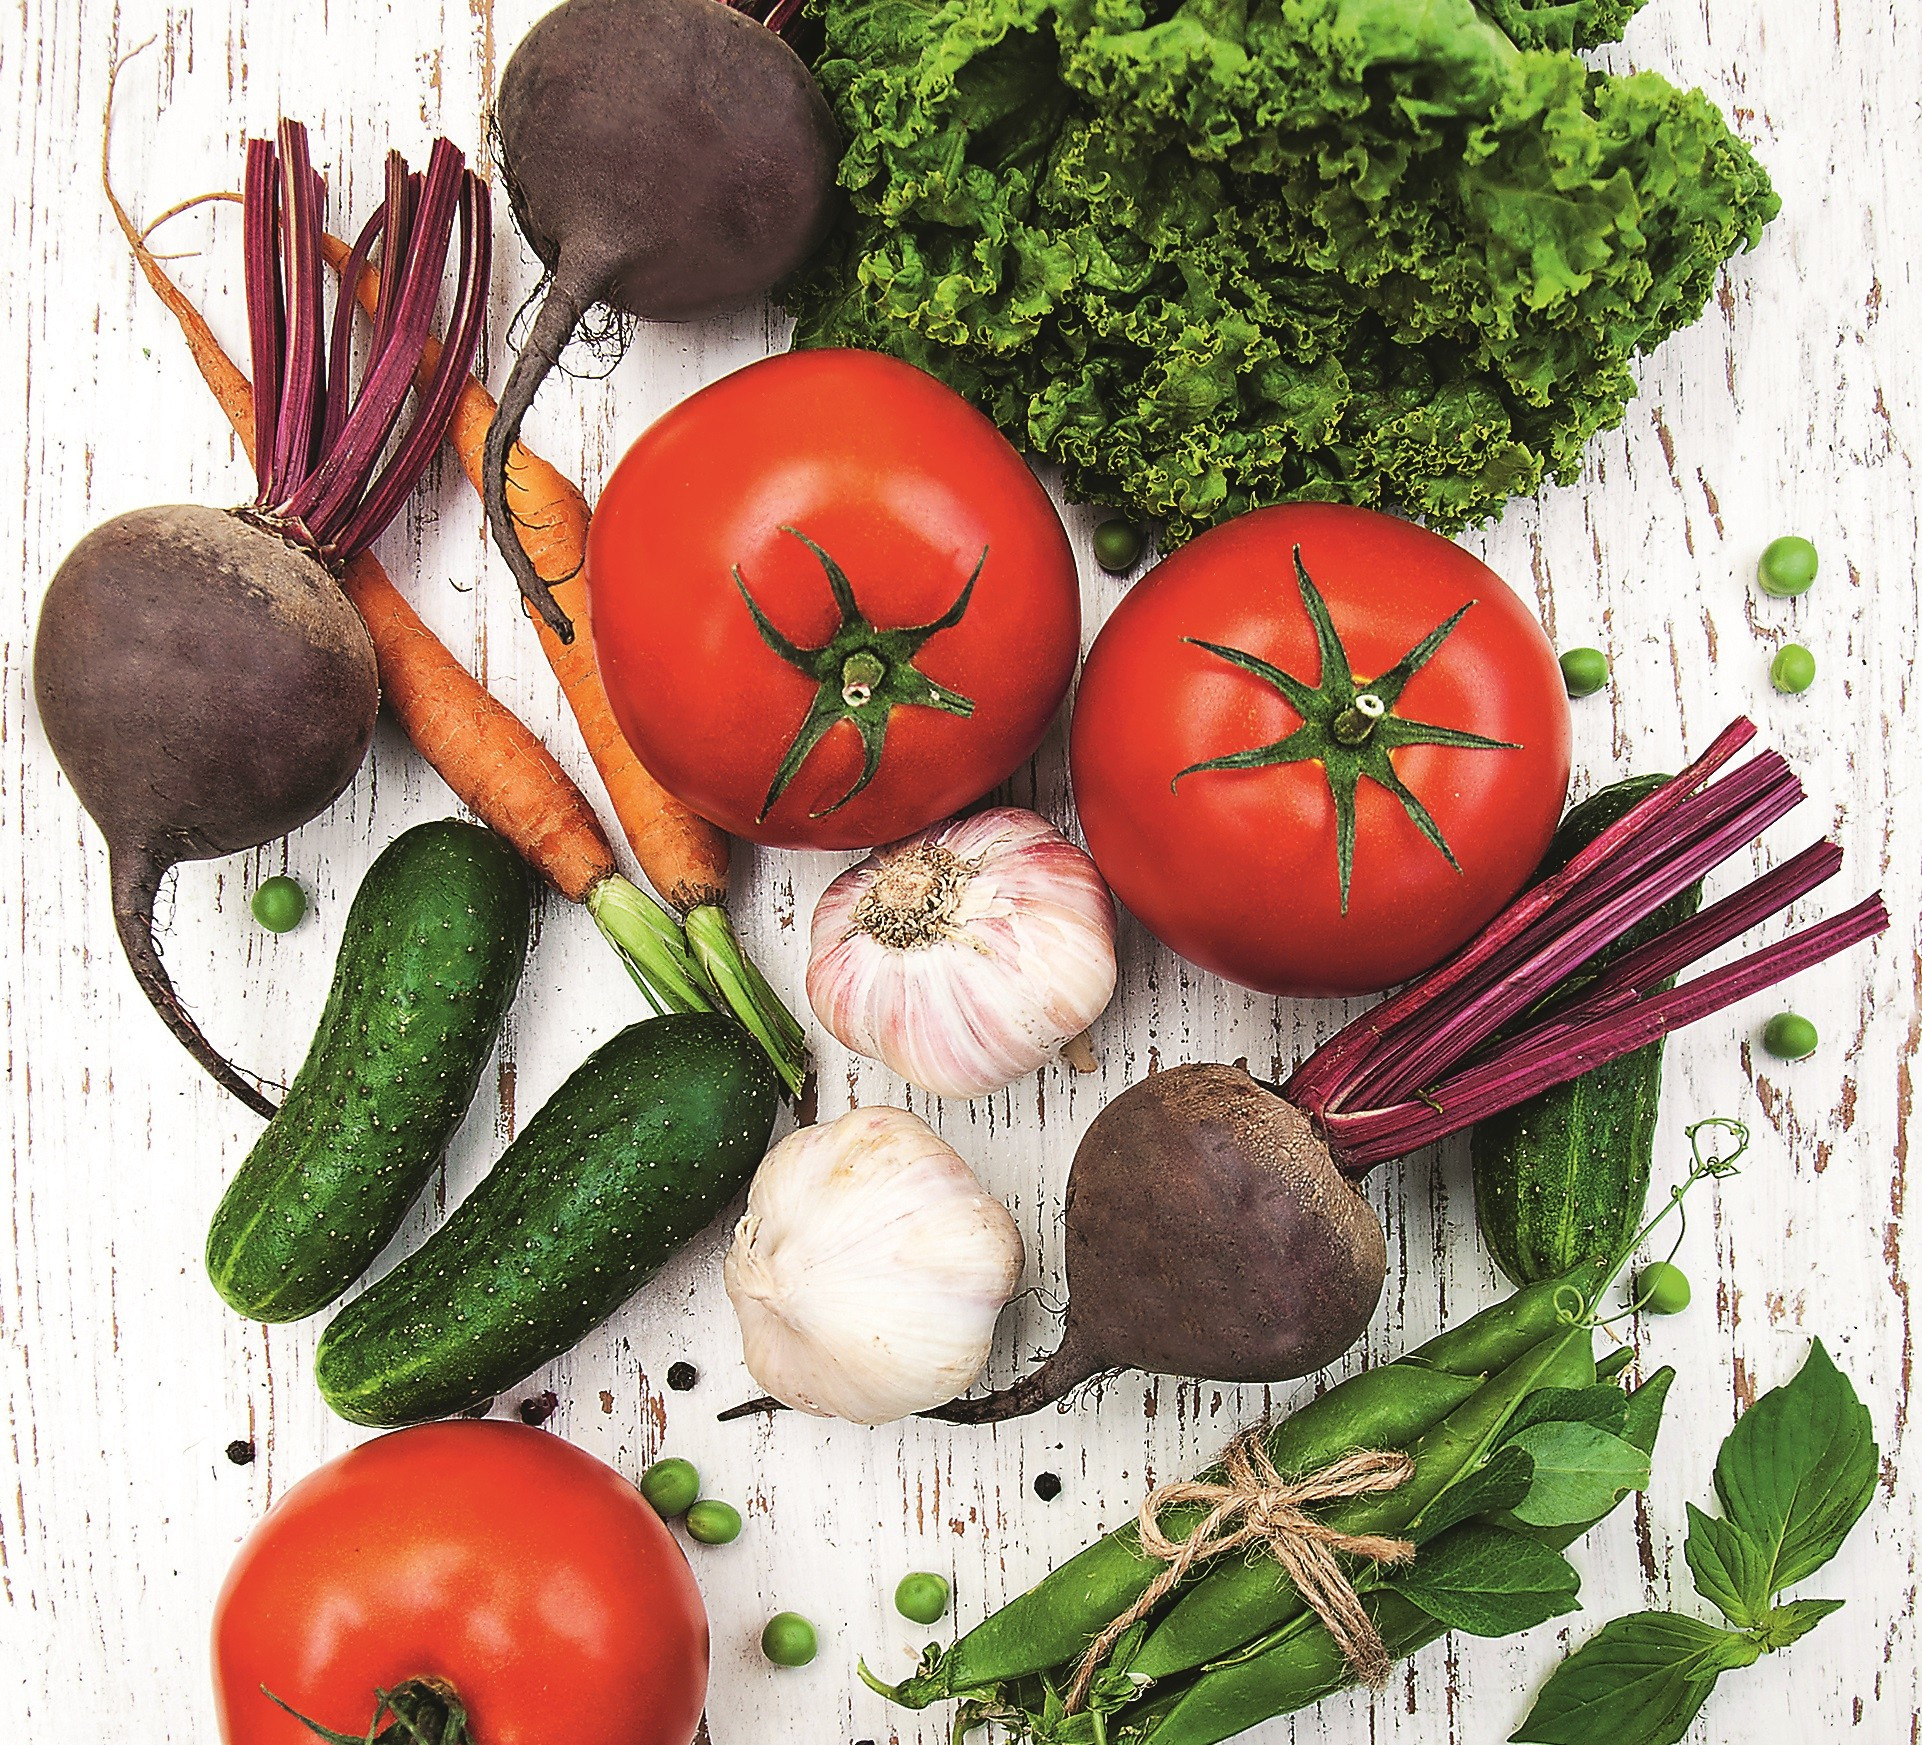 Без нитратов: как выбирать овощи зимой